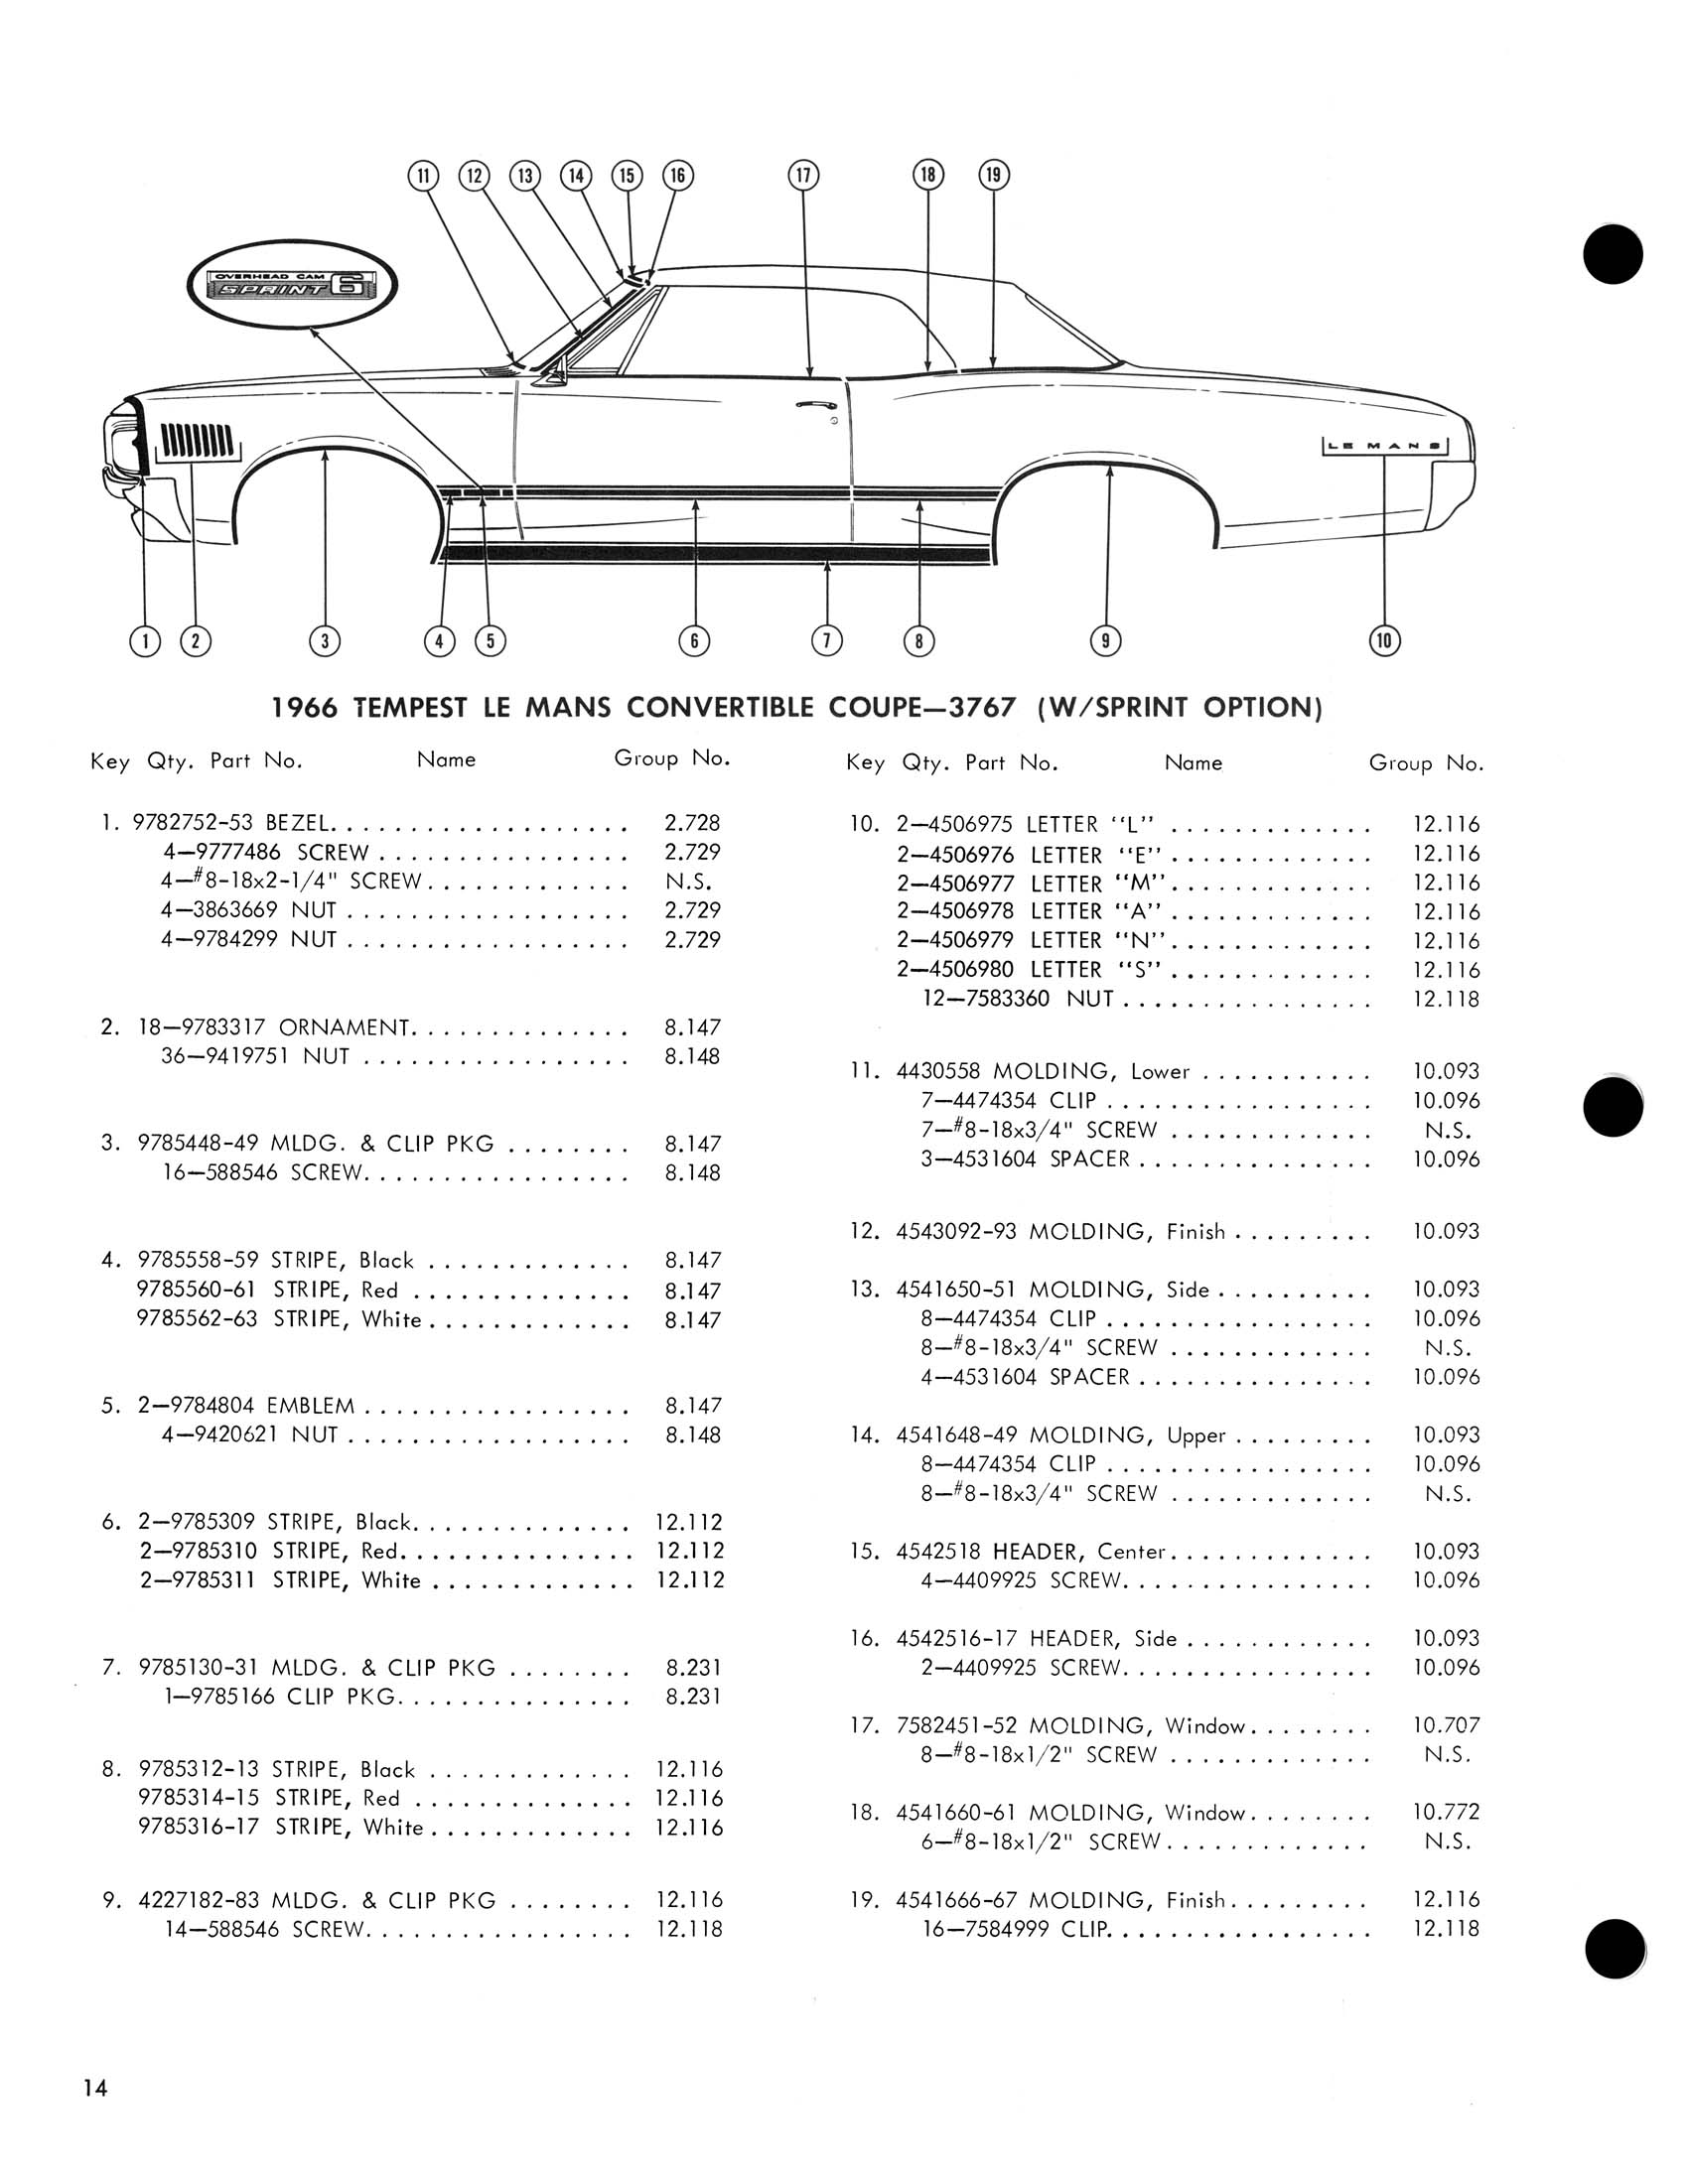 1966_Pontiac_Molding_and_Clip_Catalog-14